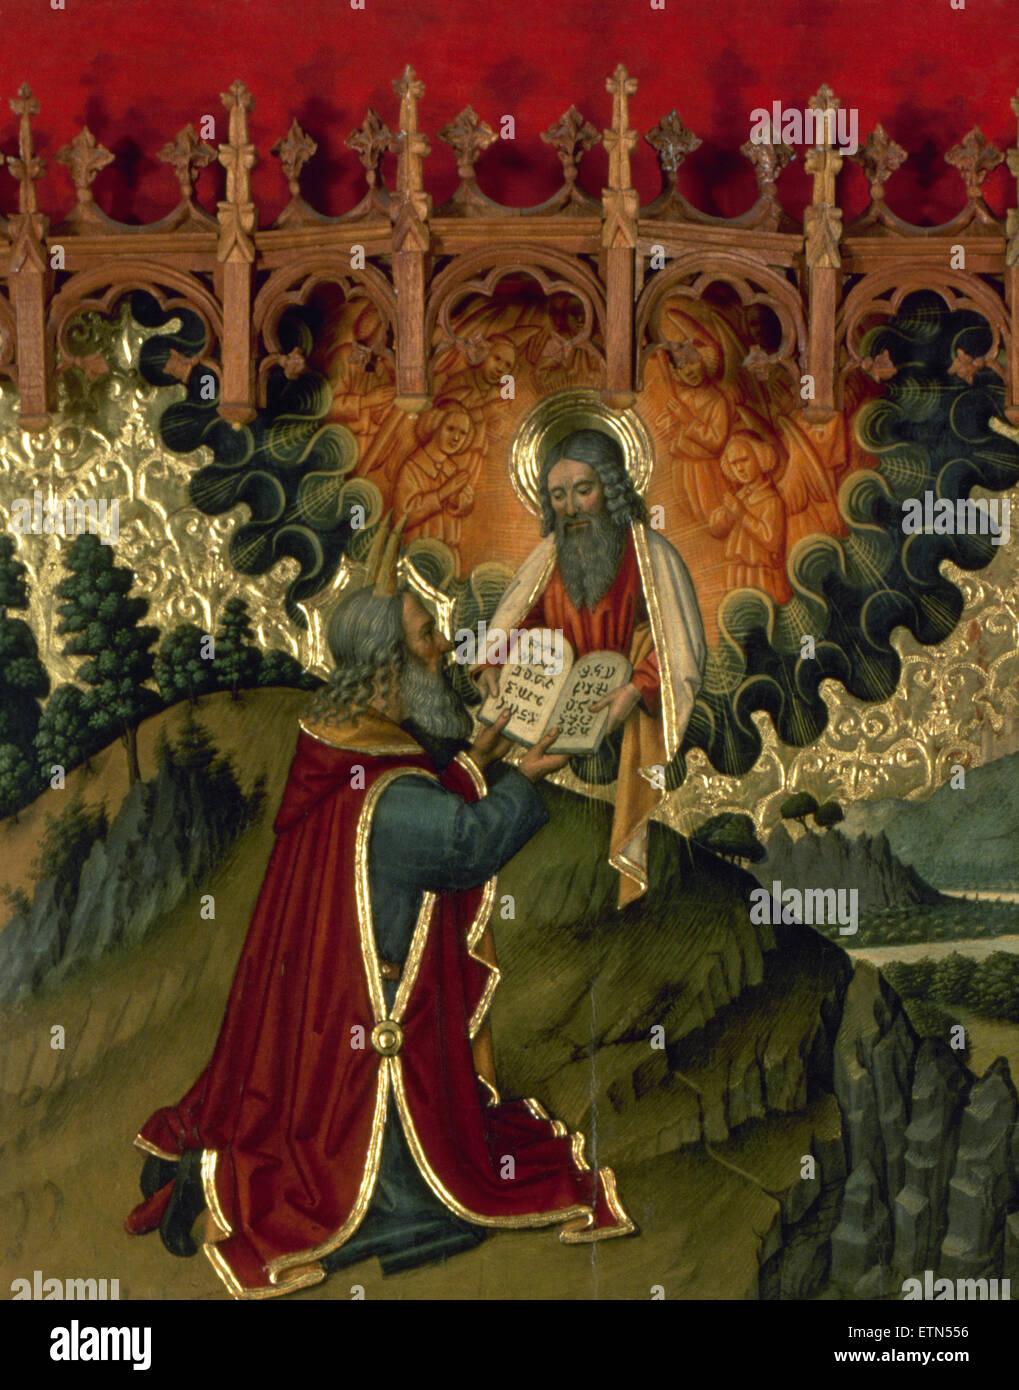 Jaume Huguet (1412-1492). Katalanisch-gotischen Maler. Altarbild der Verklärung. Gott gibt Moses die Gesetzestafeln. Tortosa Kathedrale, 1466-1475. Katalonien. Spanien. Stockfoto